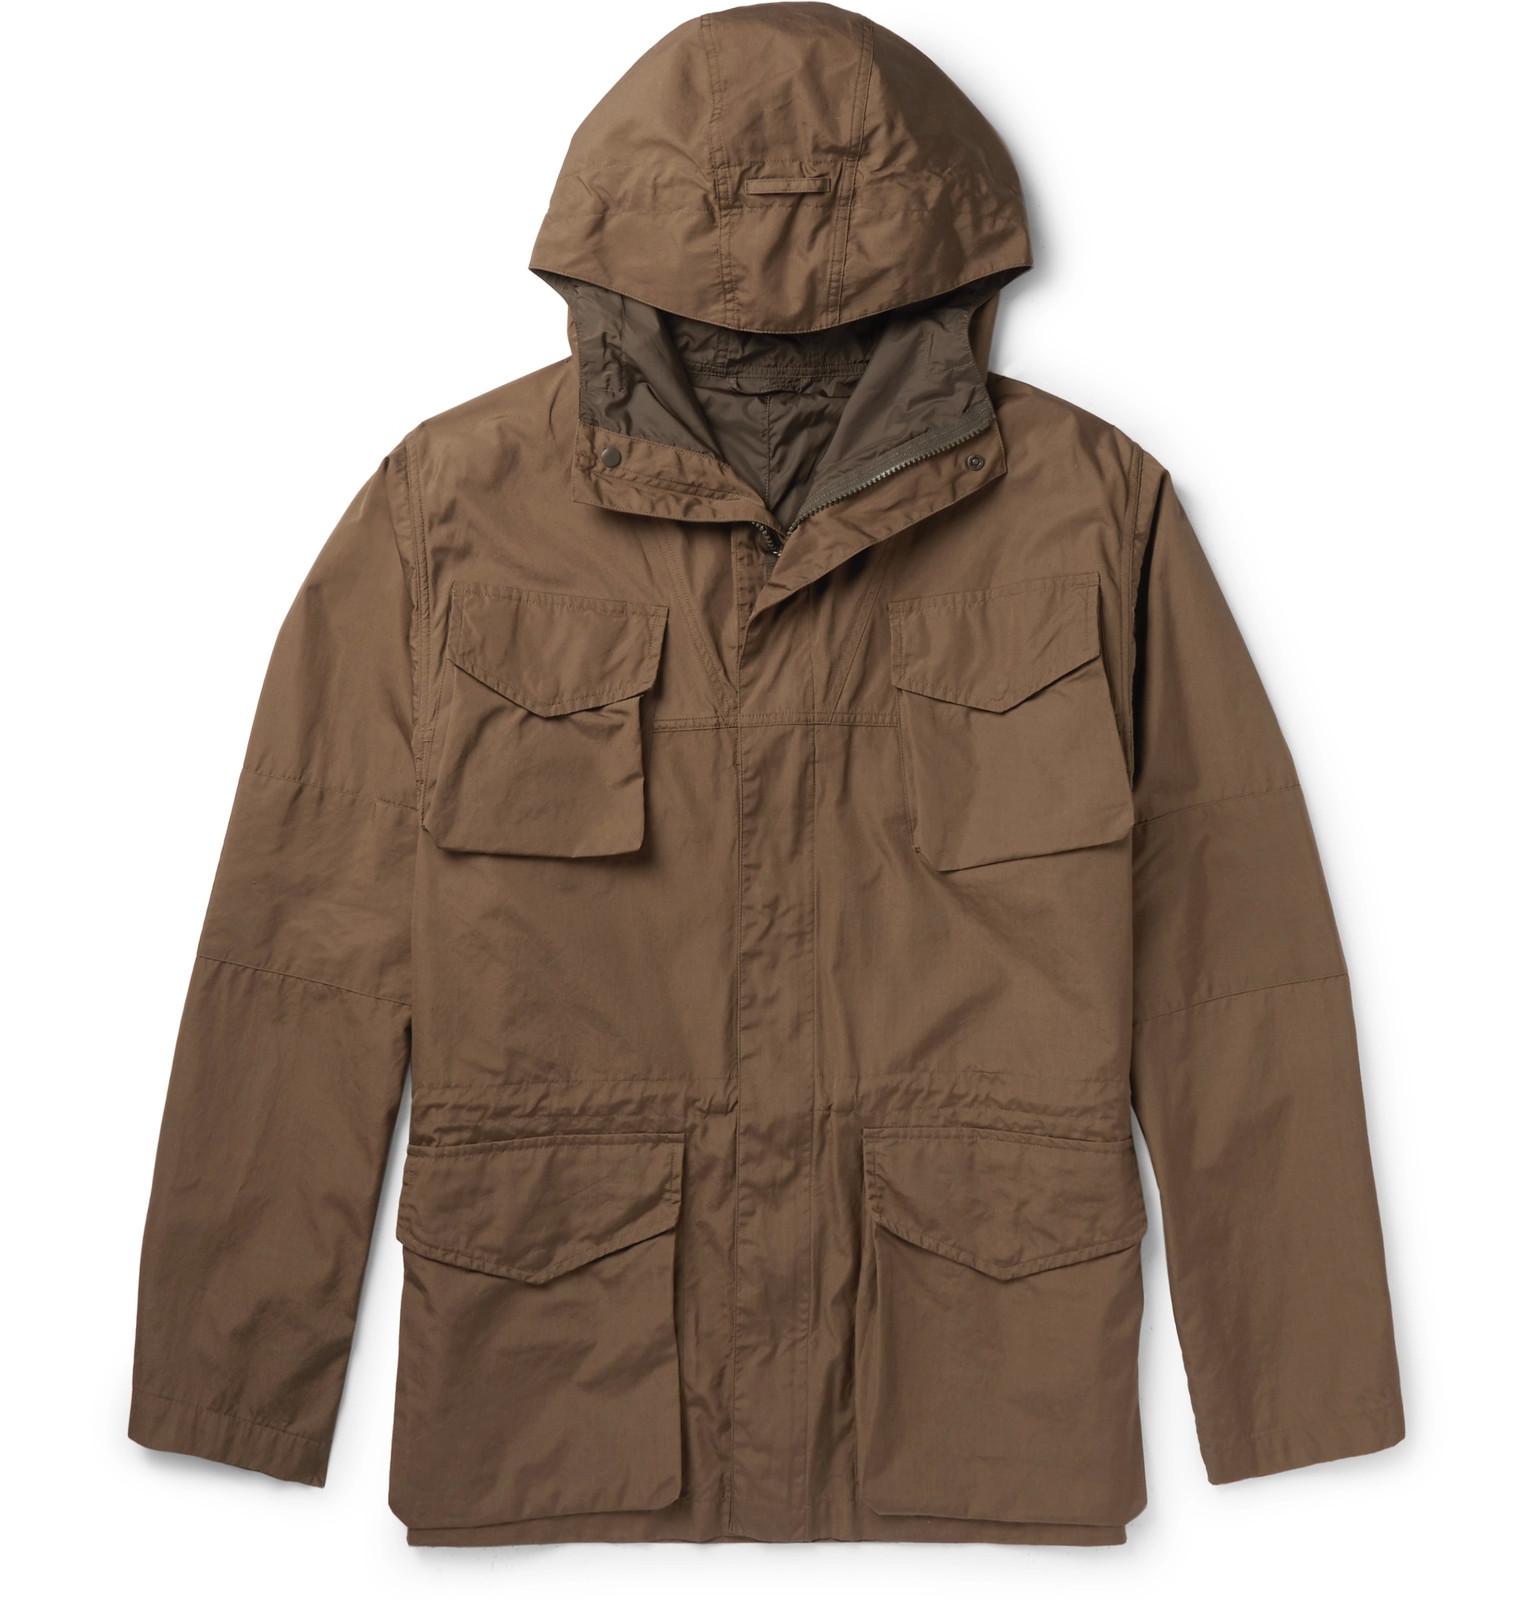 Aspesi Cotton Hooded Field Jacket in Brown for Men - Lyst